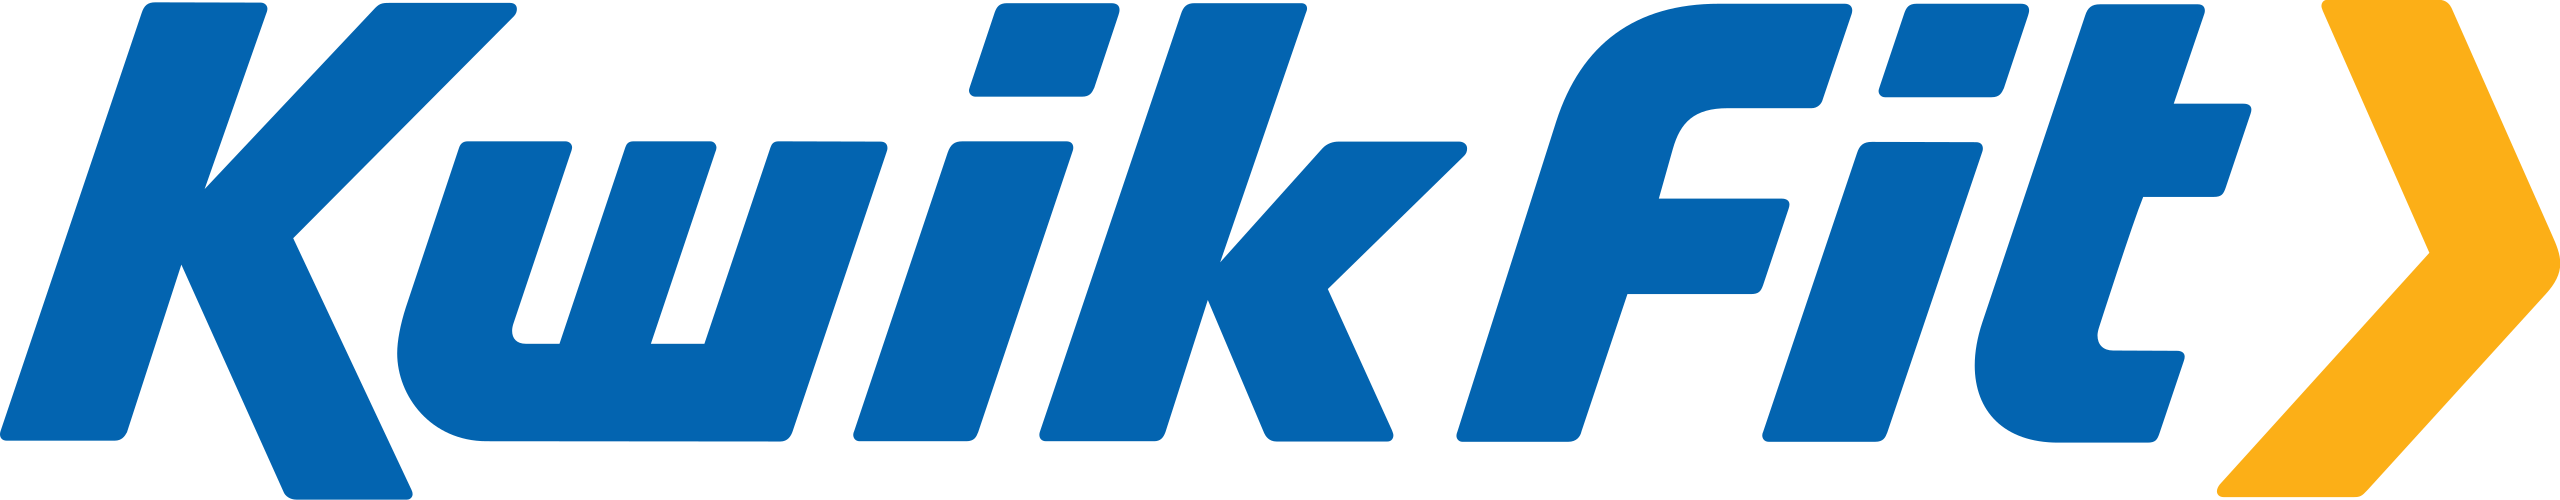 KwikFit logo